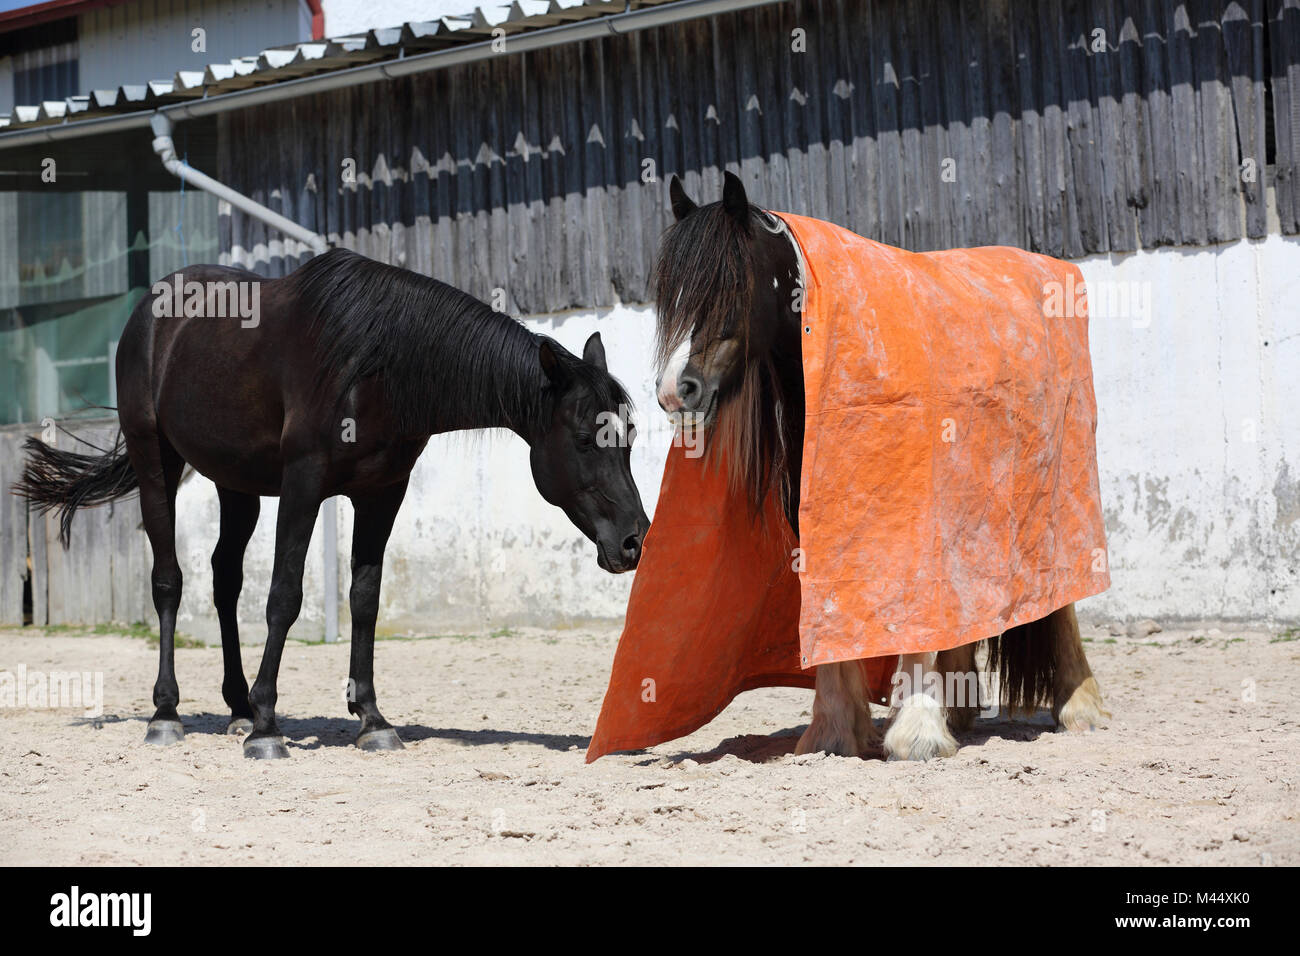 Arabian Horse y Gypsy Vanner caballo. La formación de una calma prueba con la ayuda de una gran manta. Alemania Foto de stock